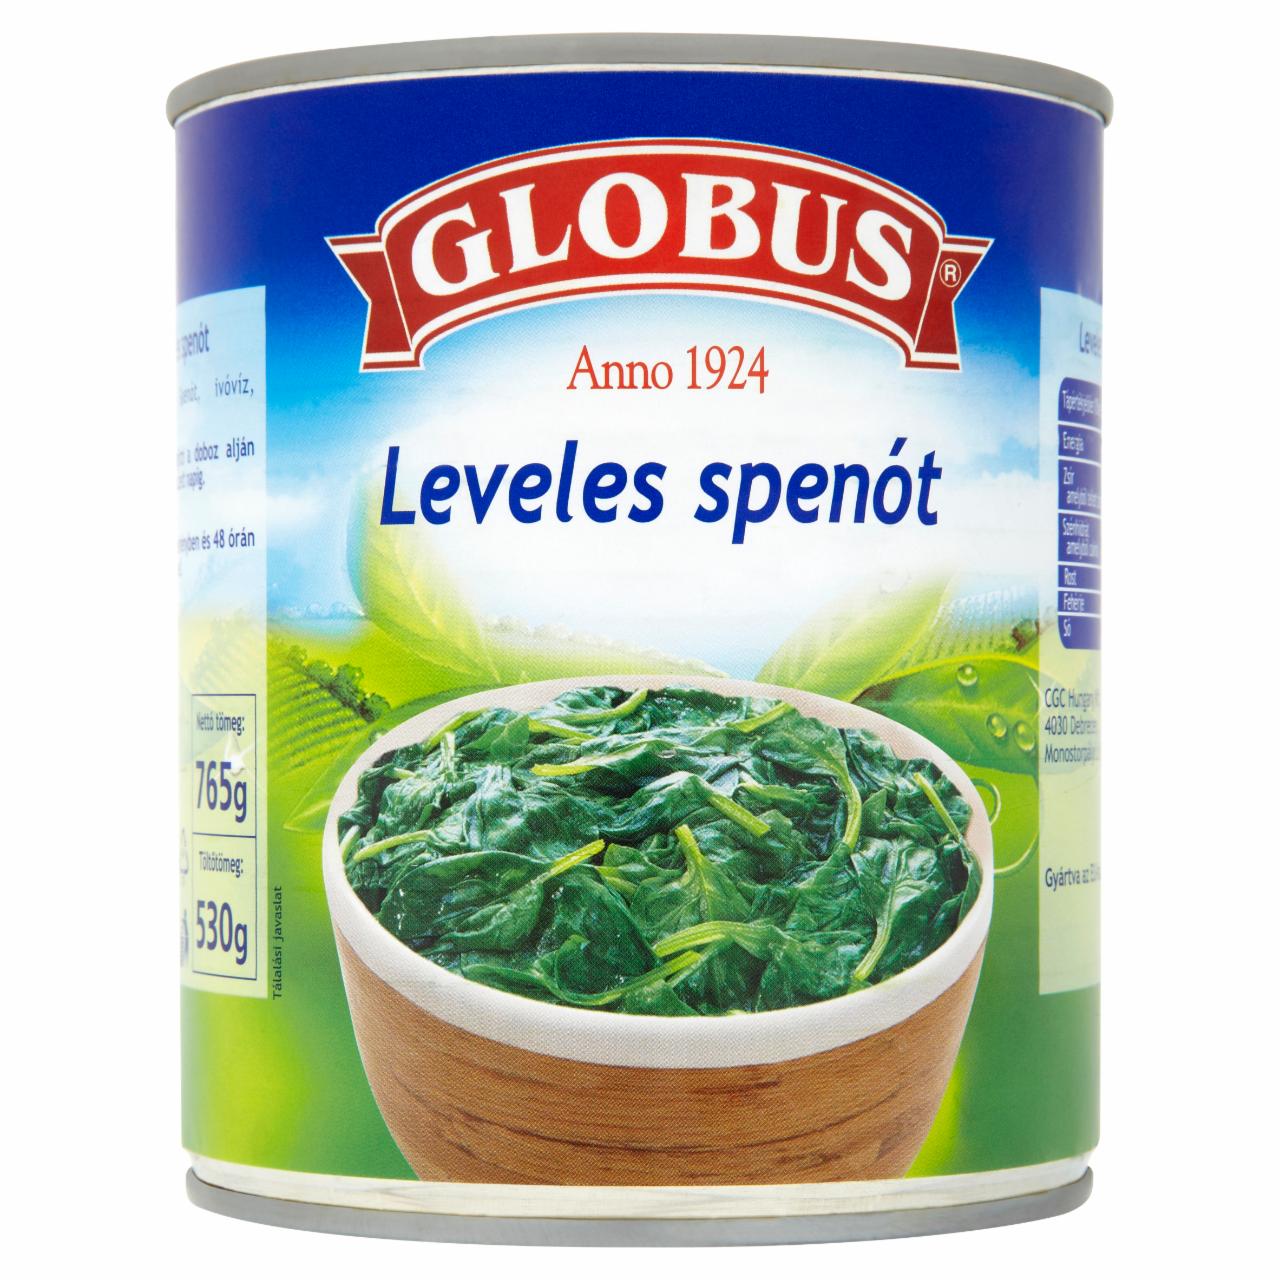 Képek - Globus leveles spenót 765 g